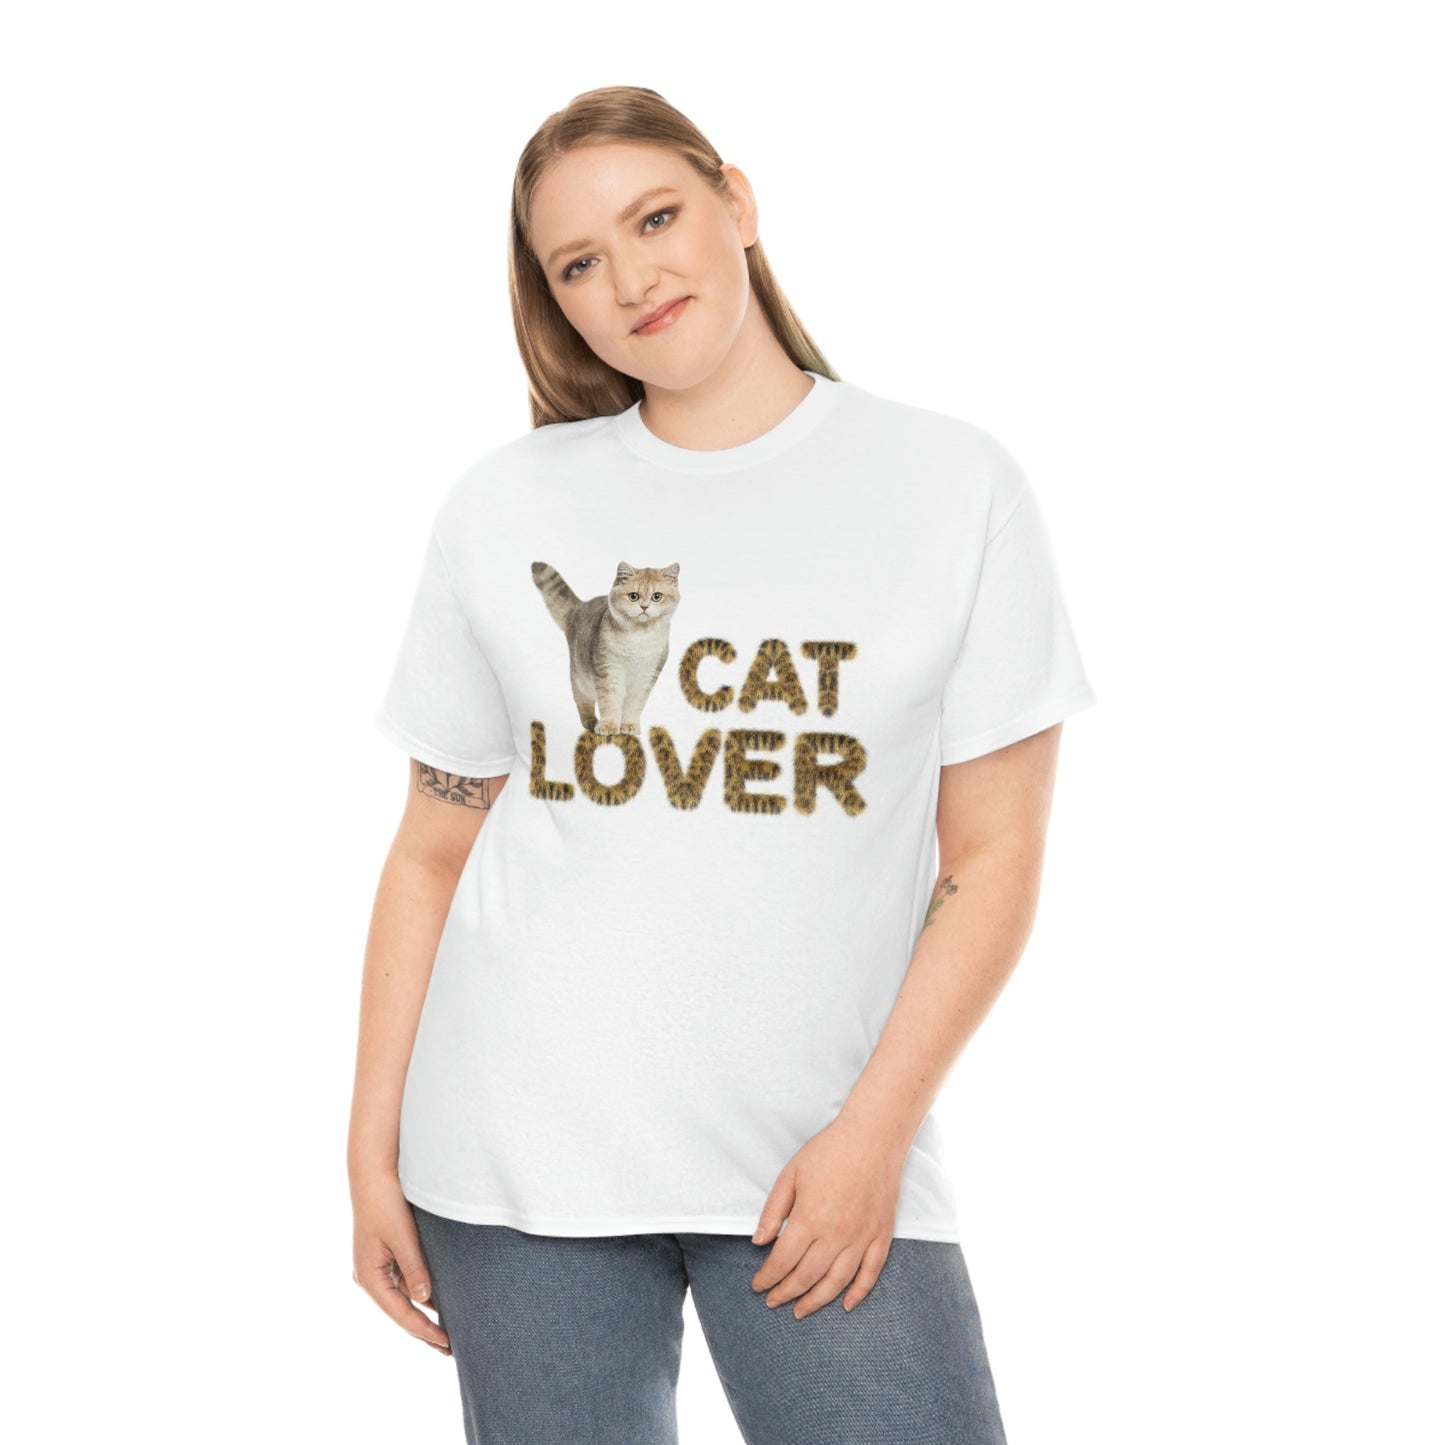 Cat Lover cute kitten (cat) design Graphic tee shirt